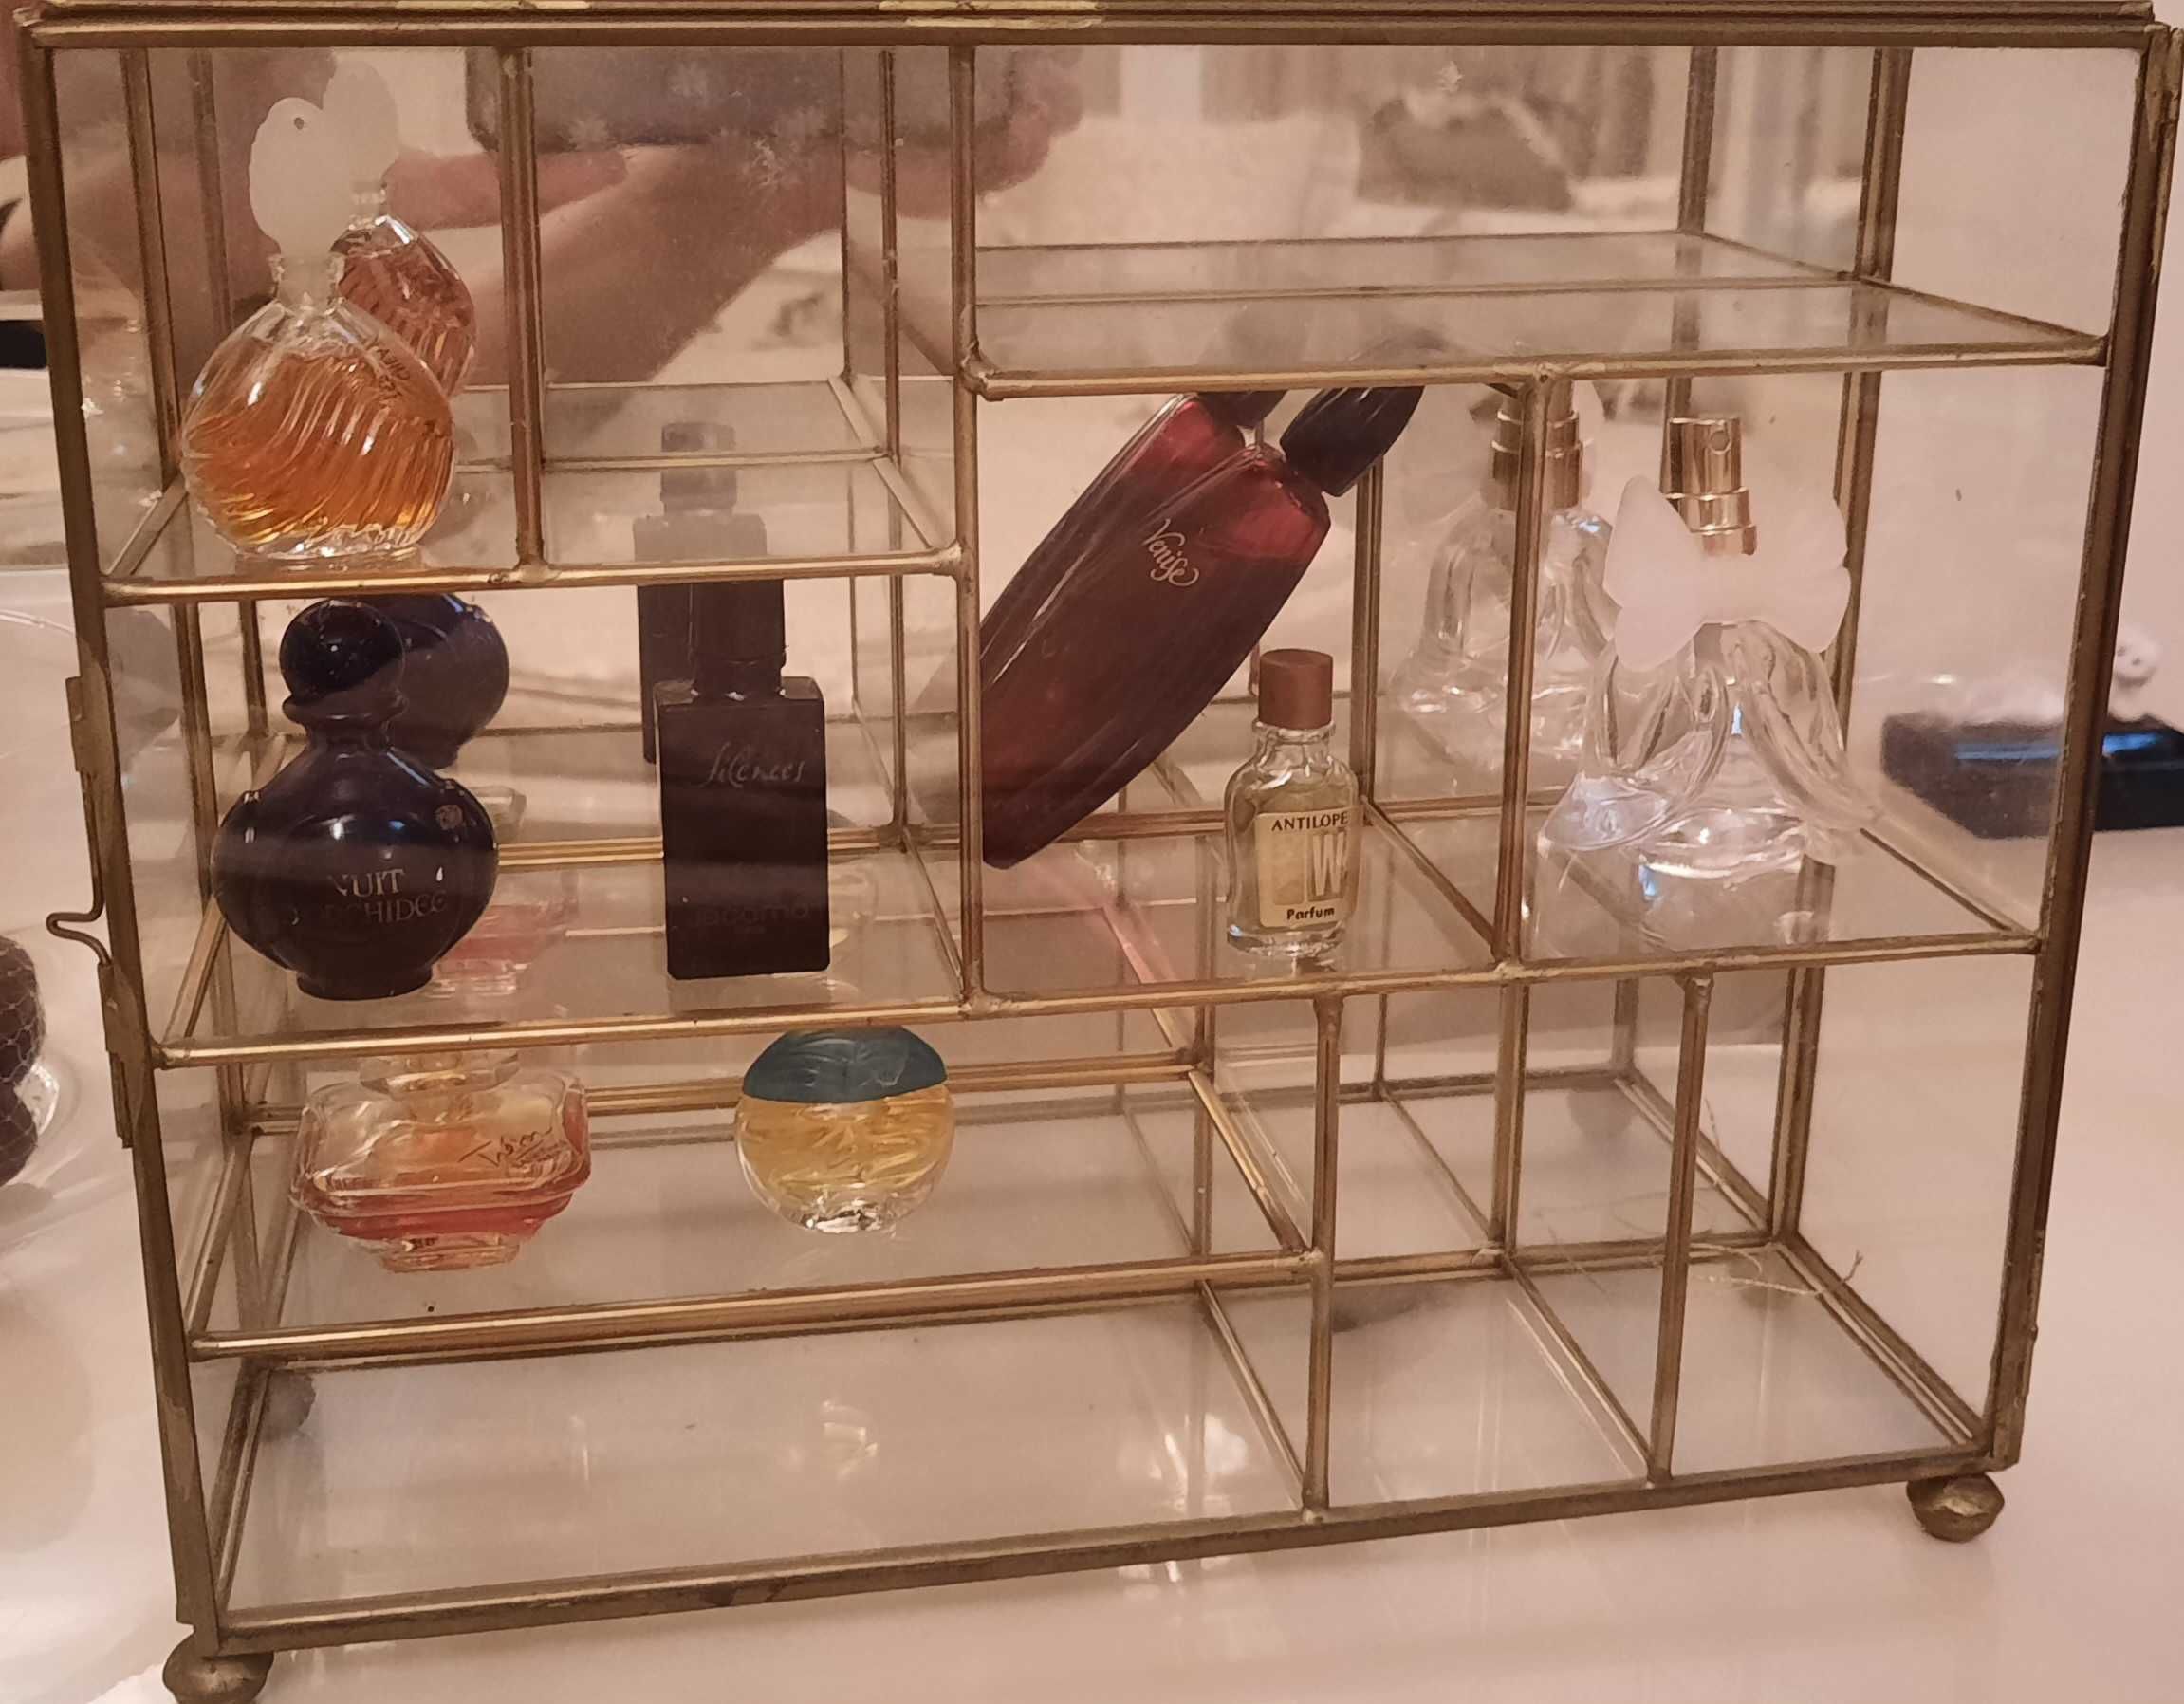 Expositor em vidro com 8 miniaturas de perfume